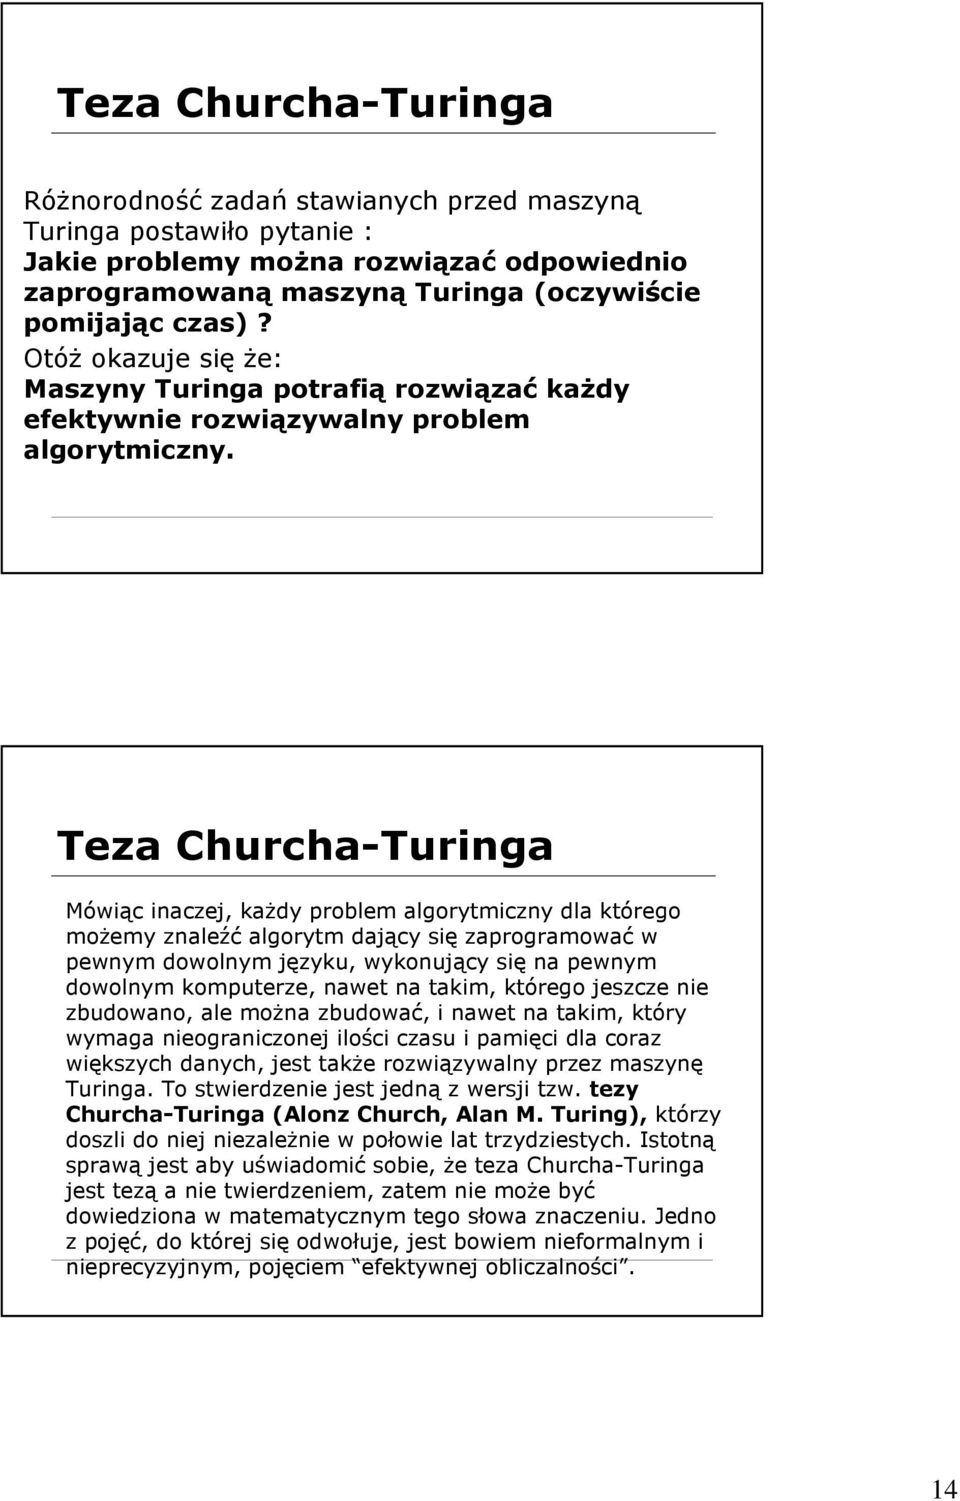 Teza Churcha-Turinga Mówiąc inaczej, kaŝdy problem algorytmiczny dla którego moŝemy znaleźć algorytm dający się zaprogramować w pewnym dowolnym języku, wykonujący się na pewnym dowolnym komputerze,